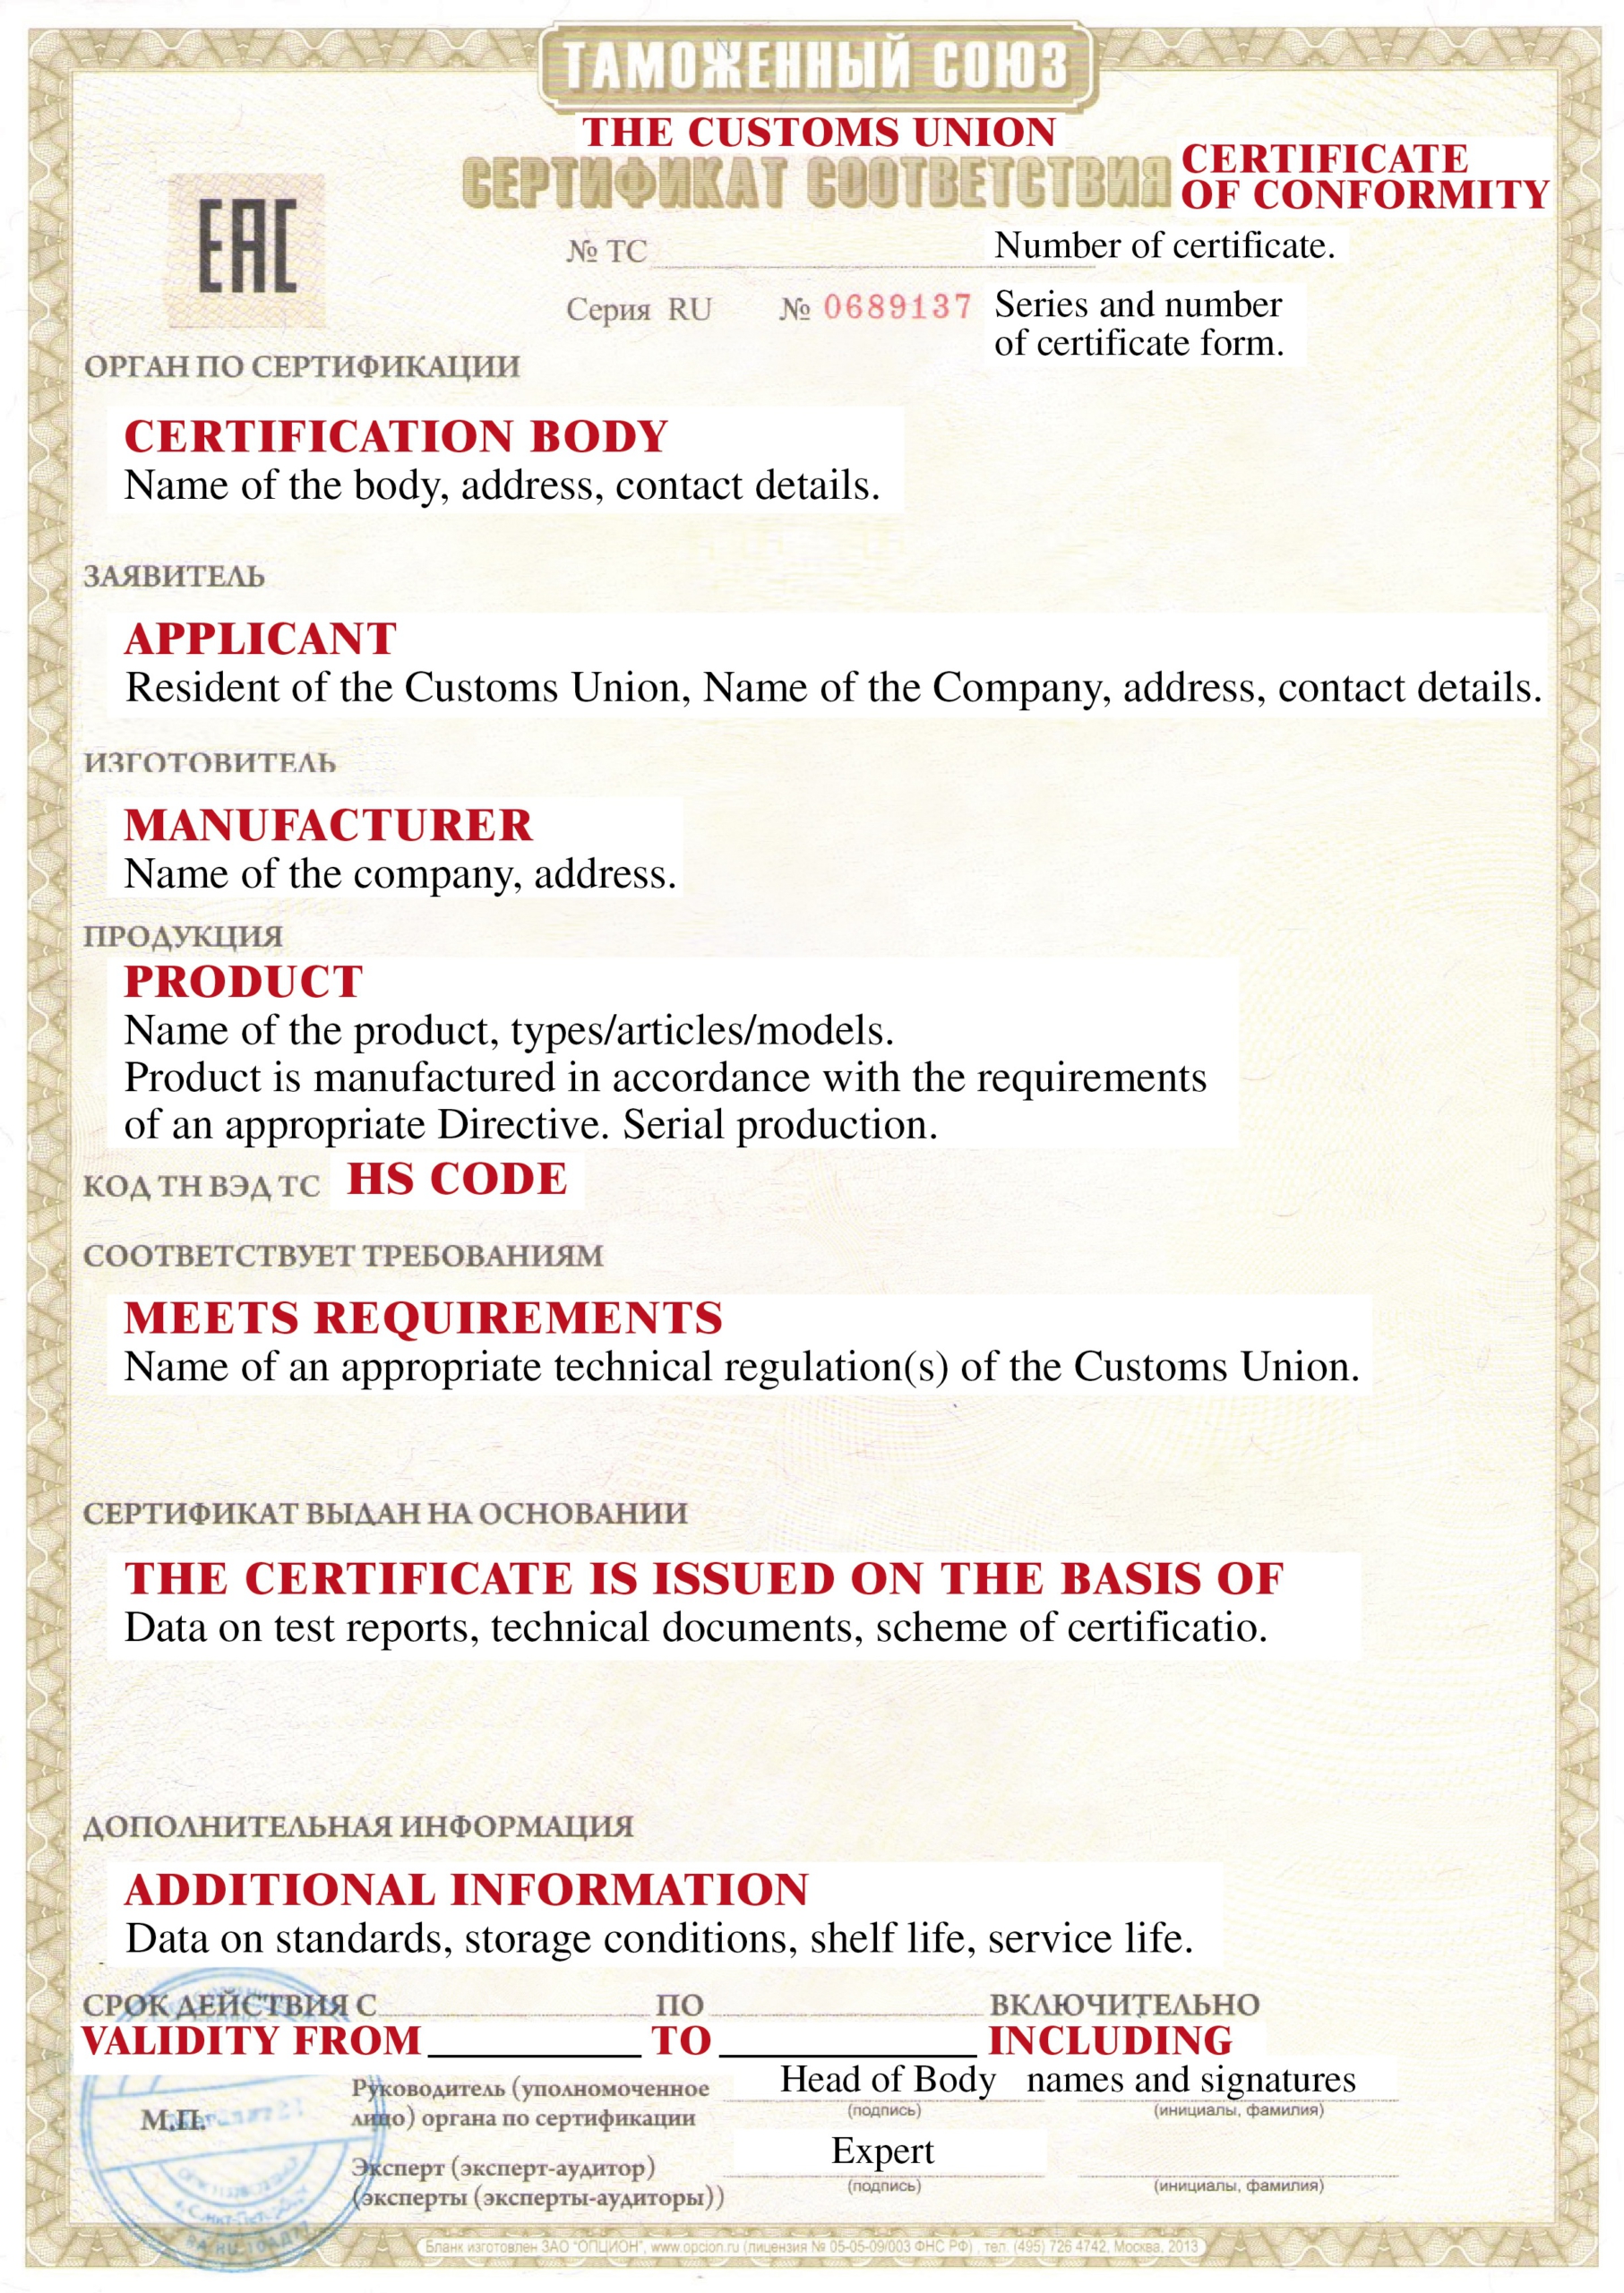 Certificado de conformidad